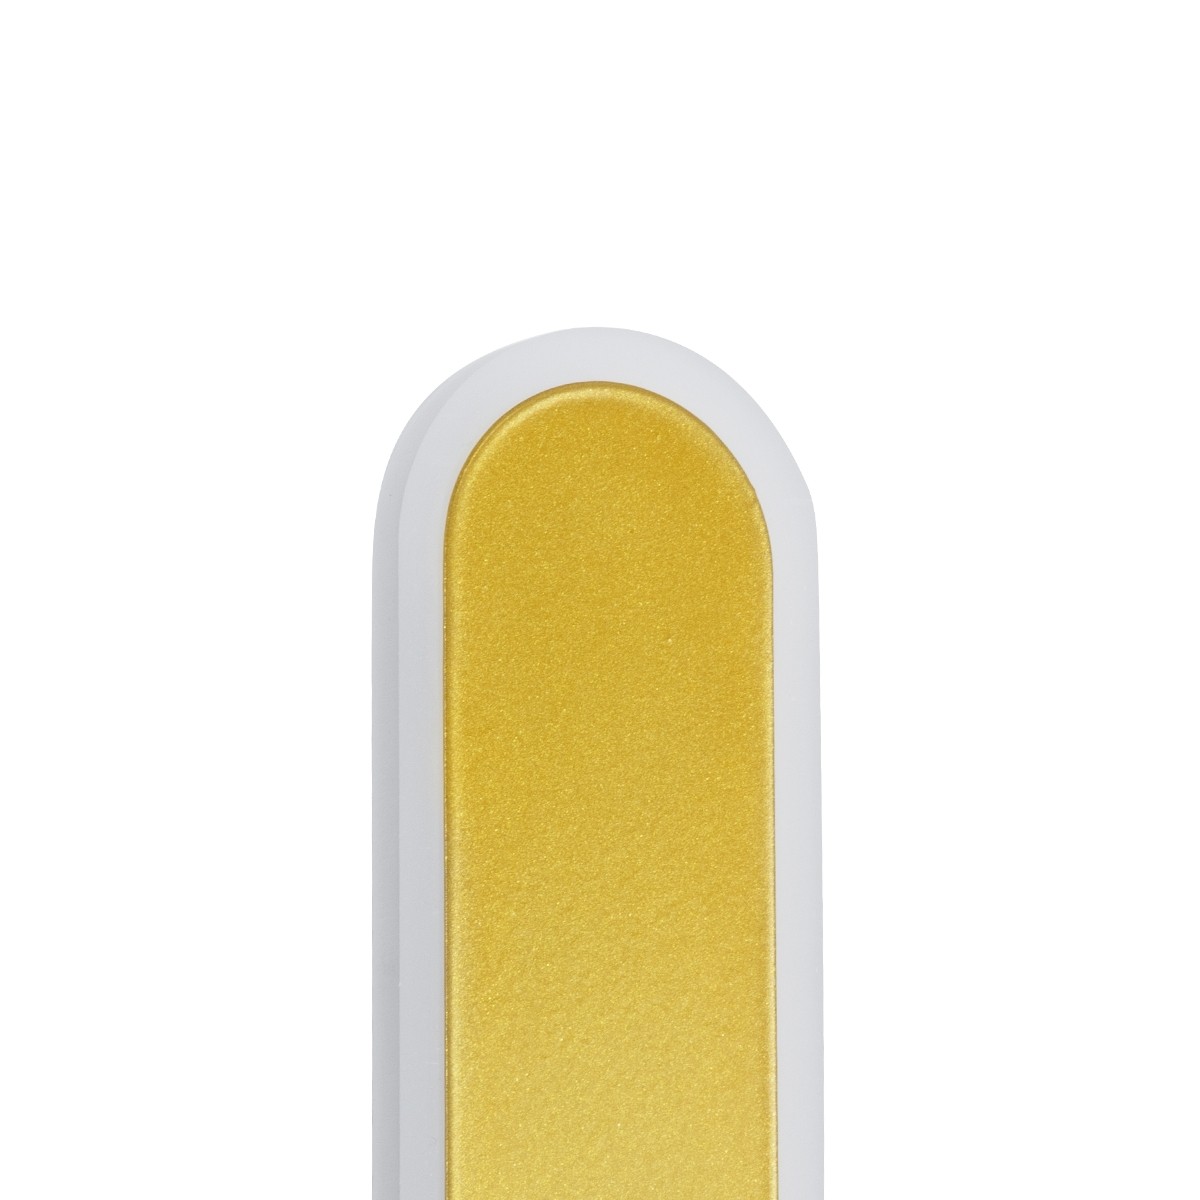 Led Γραμμικό Φωτιστικό Τοίχου - Απλίκα HOUSTON 18Watt Χρυσό με Εναλλαγή Φωτισμού Μ6 x Π3 x Υ60cm 61348